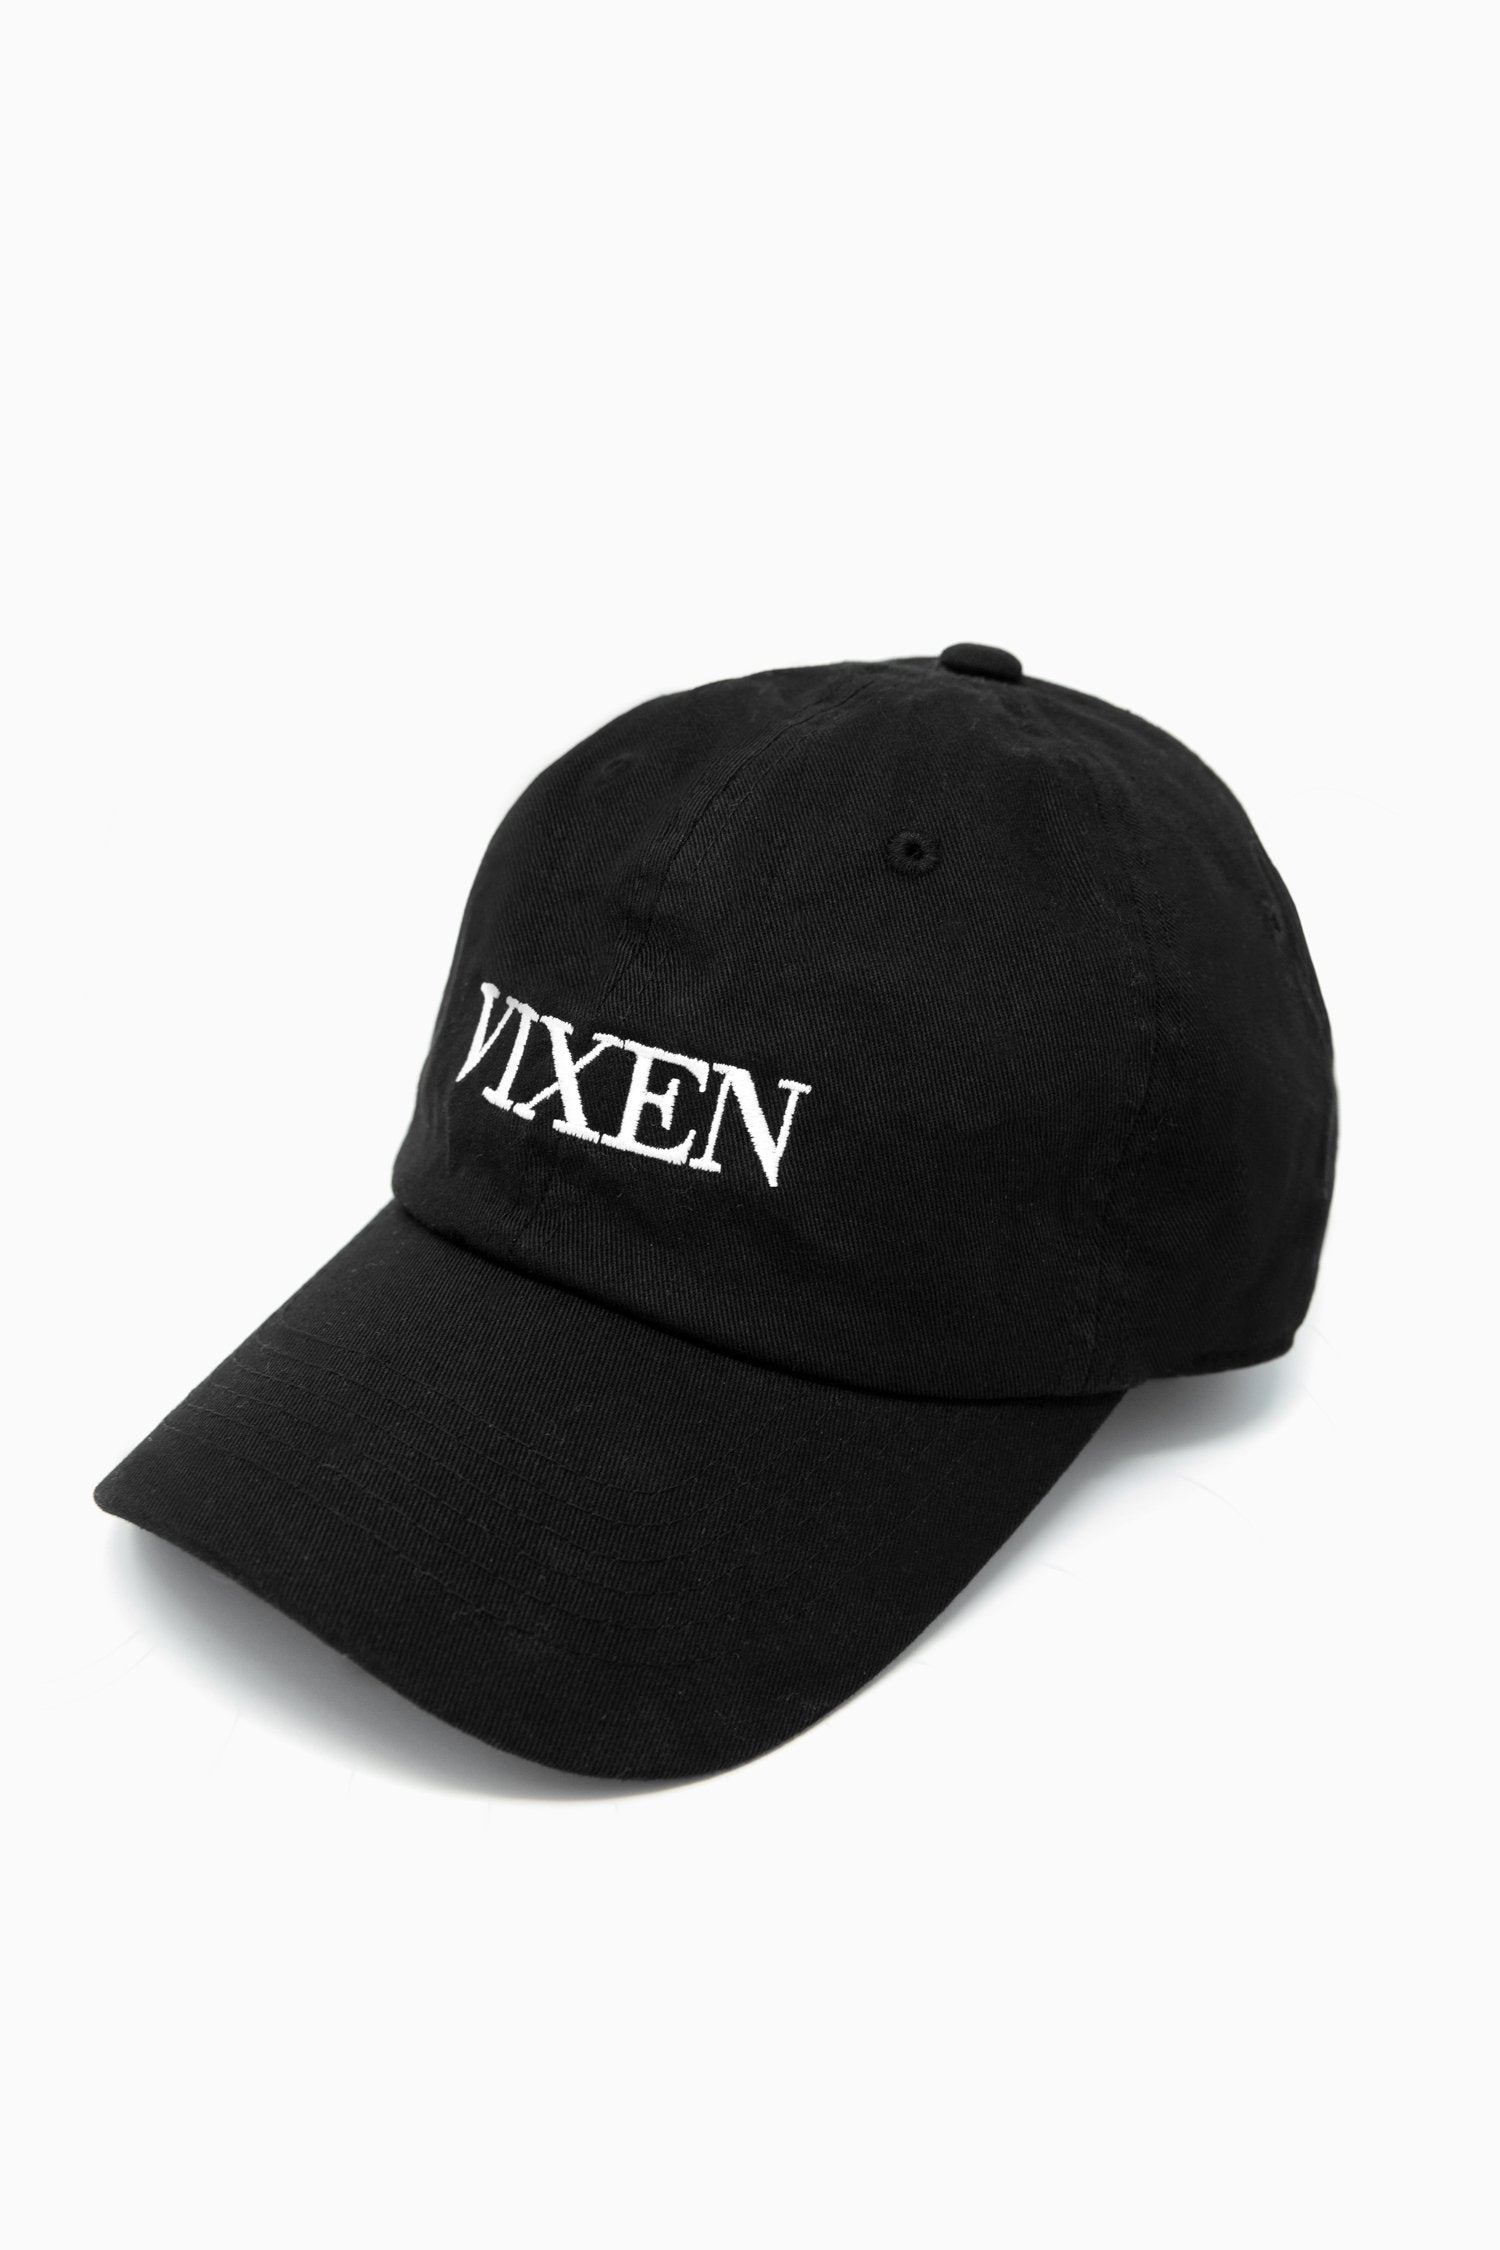 Vixen Logo Dad Hat Headwear VIXEN 